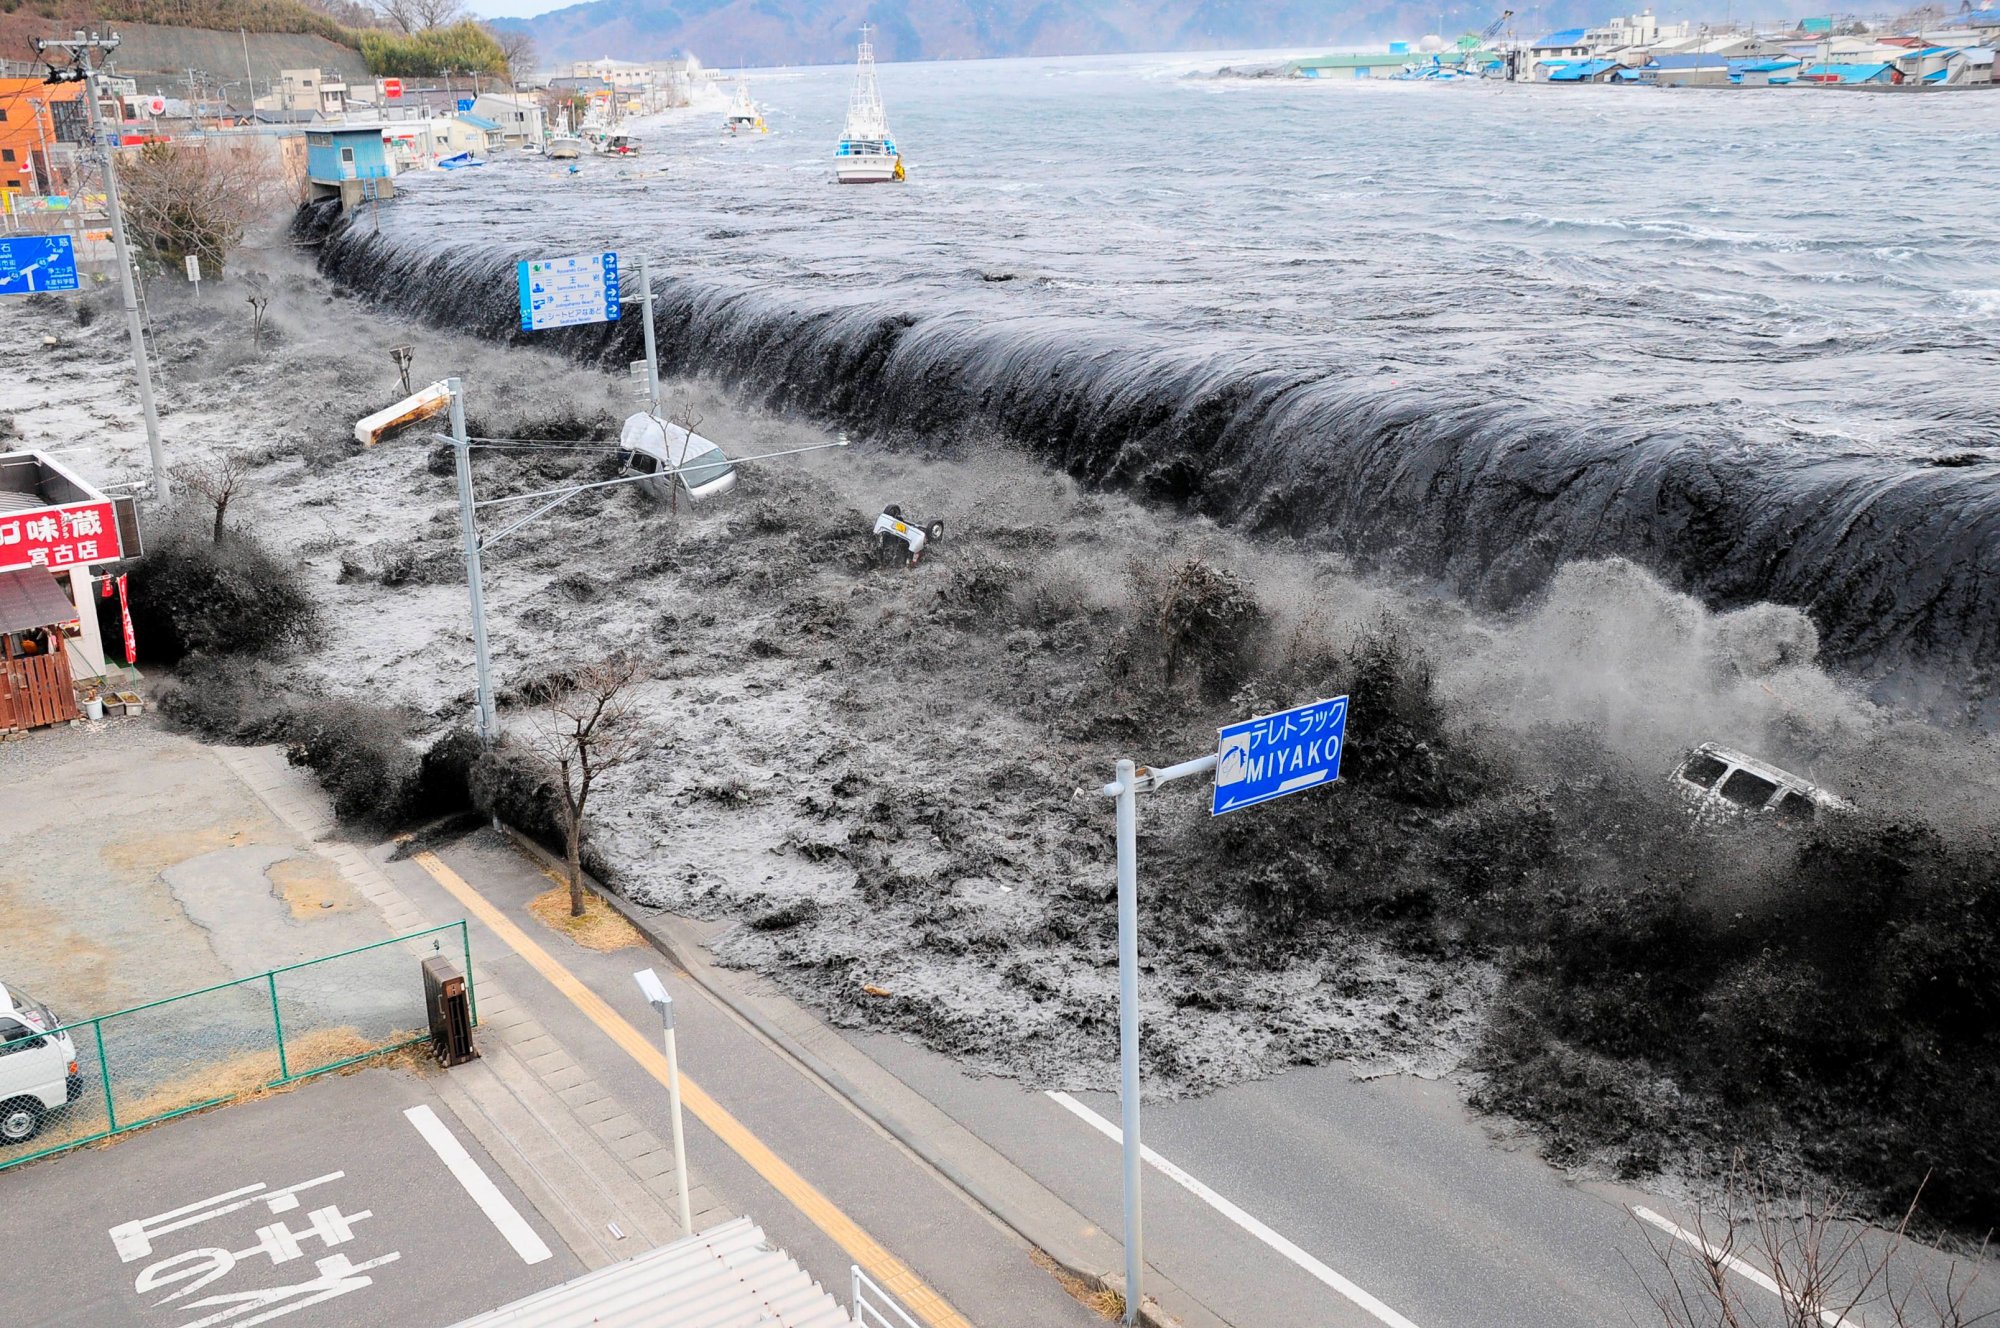 Ιαπωνία: Προειδοποίηση για τσουνάμι μετά από ισχυρό σεισμό 7,4 βαθμών